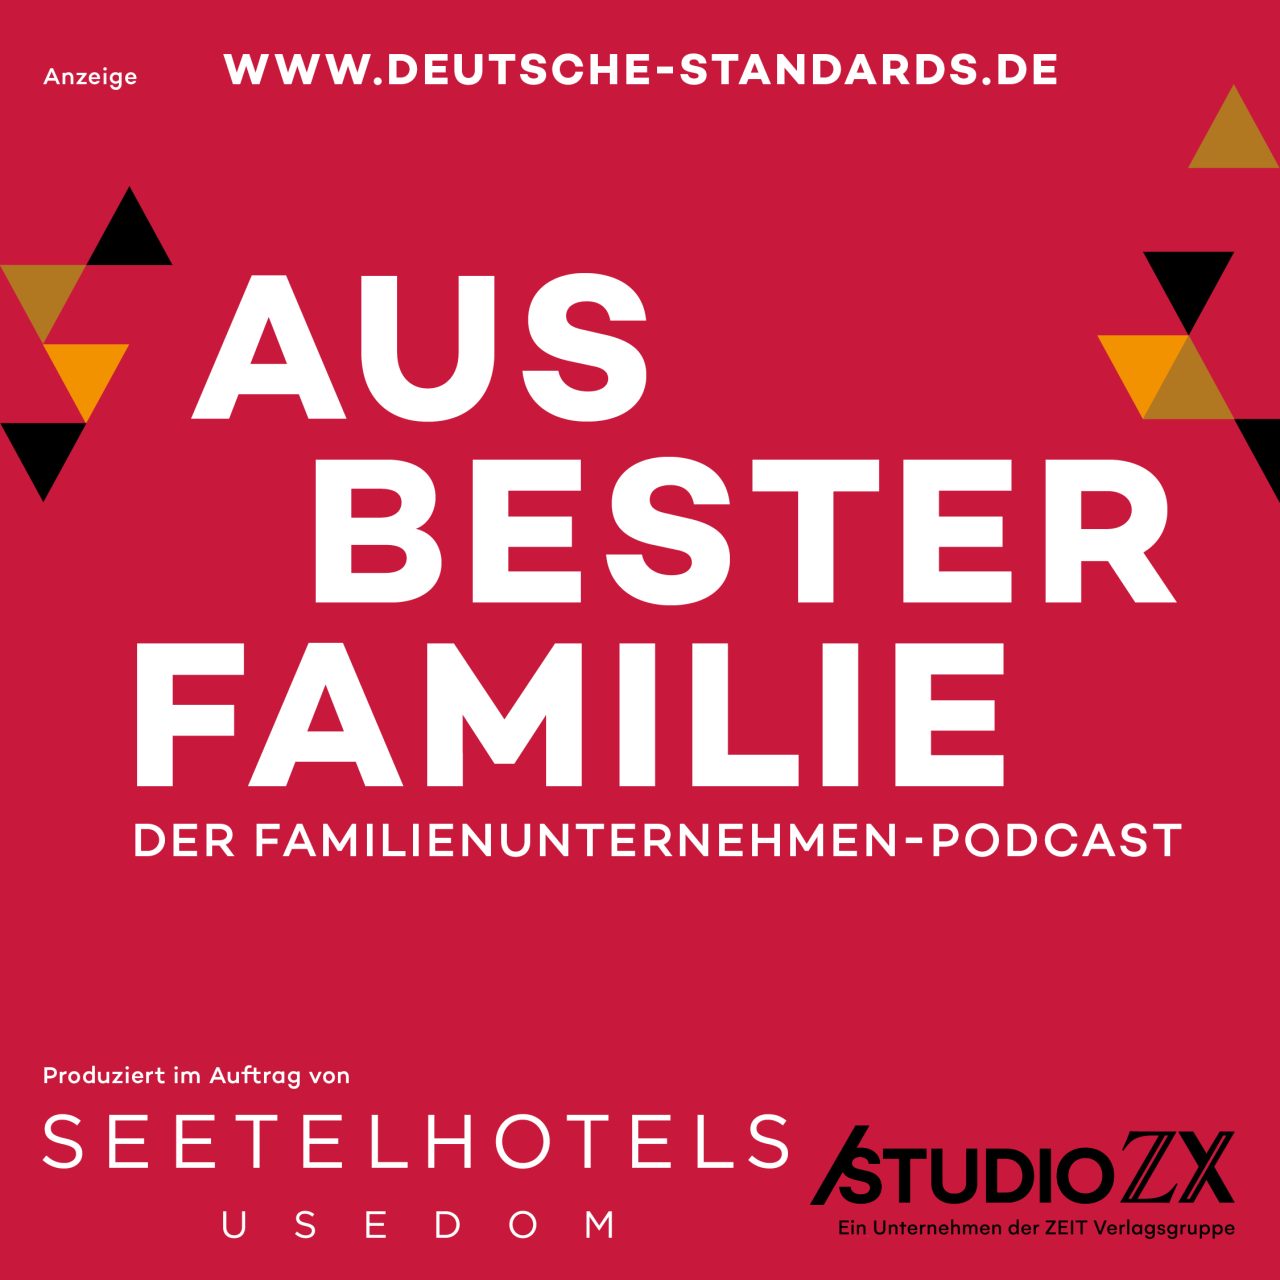 Der Familienunternehmen-Podcast mit SEETELHOTELS